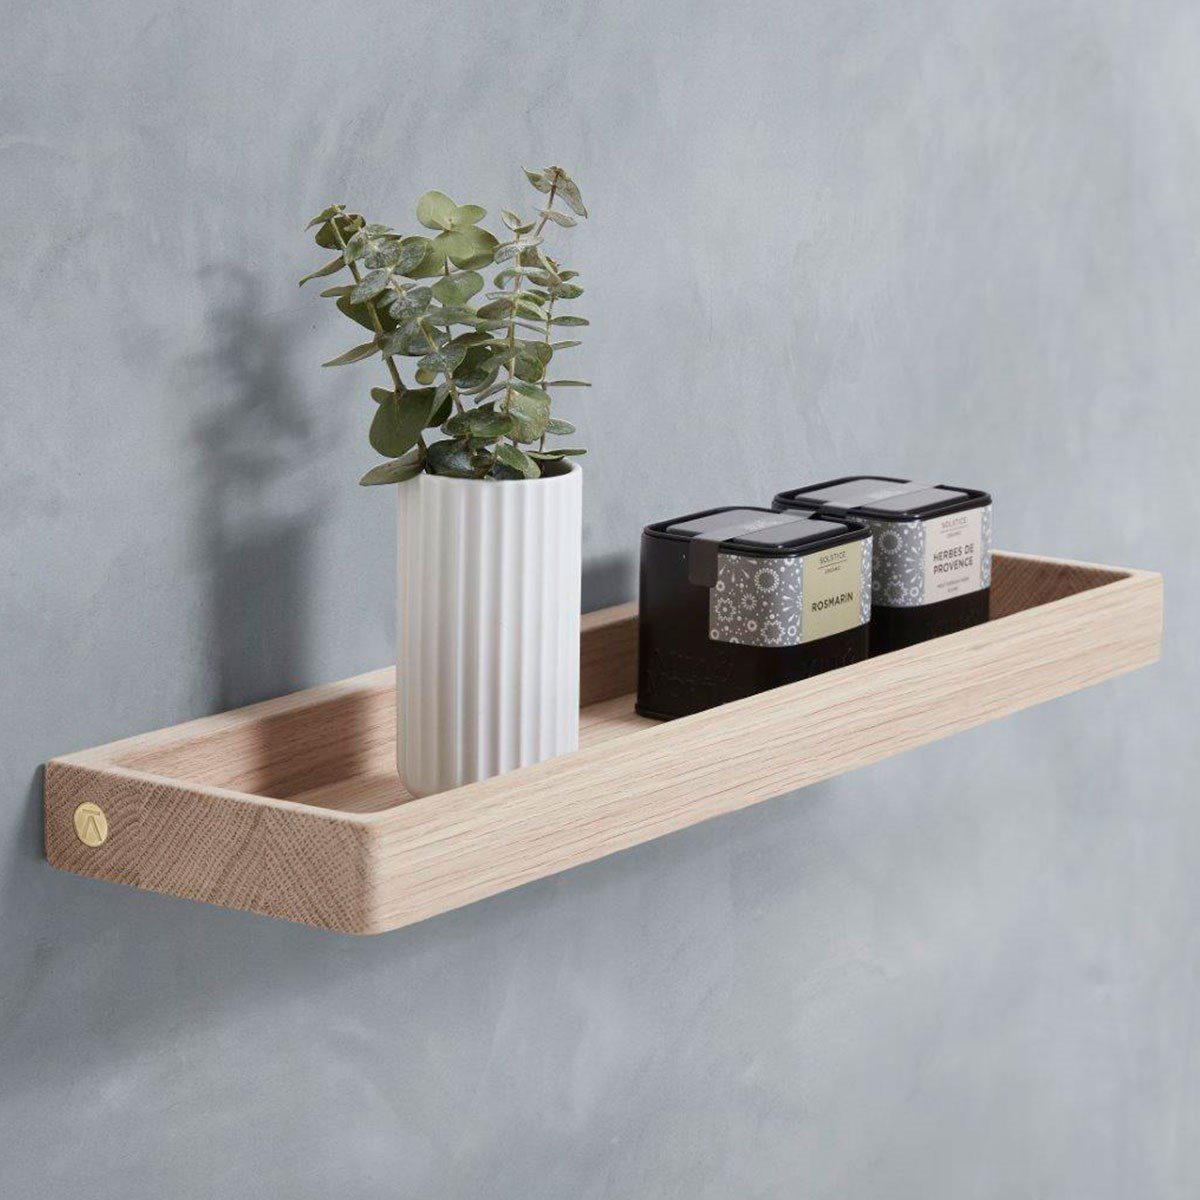 Furniture Shelf Træhylde i lækkert design